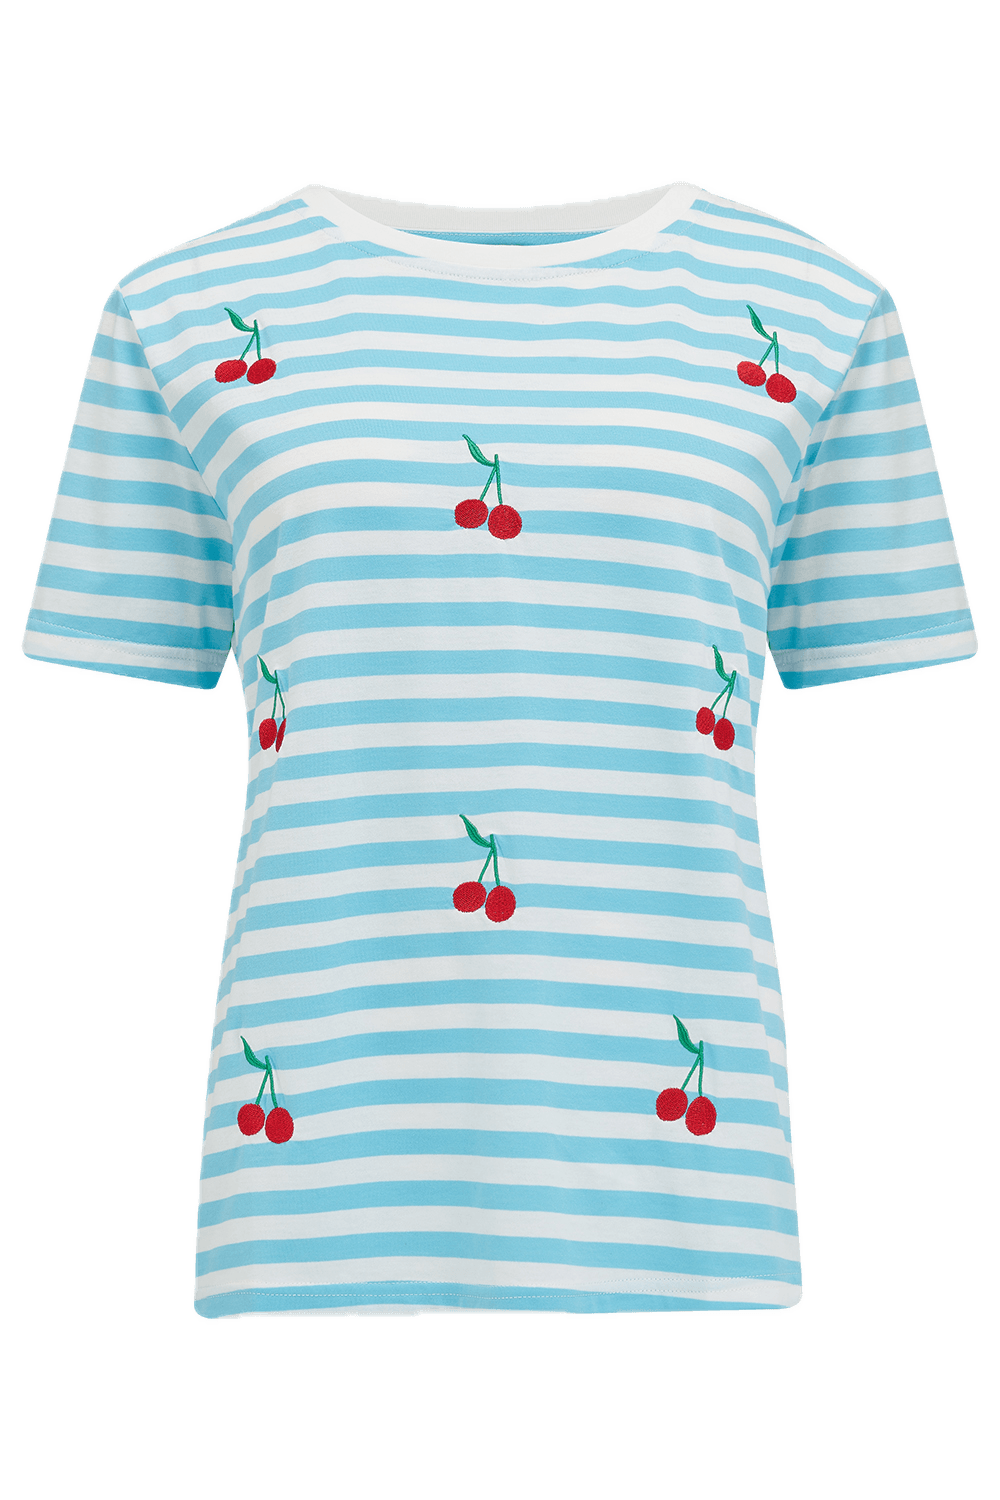 Camiseta Sugarhill Maggie Blue White Cherry Embroidery - ECRU